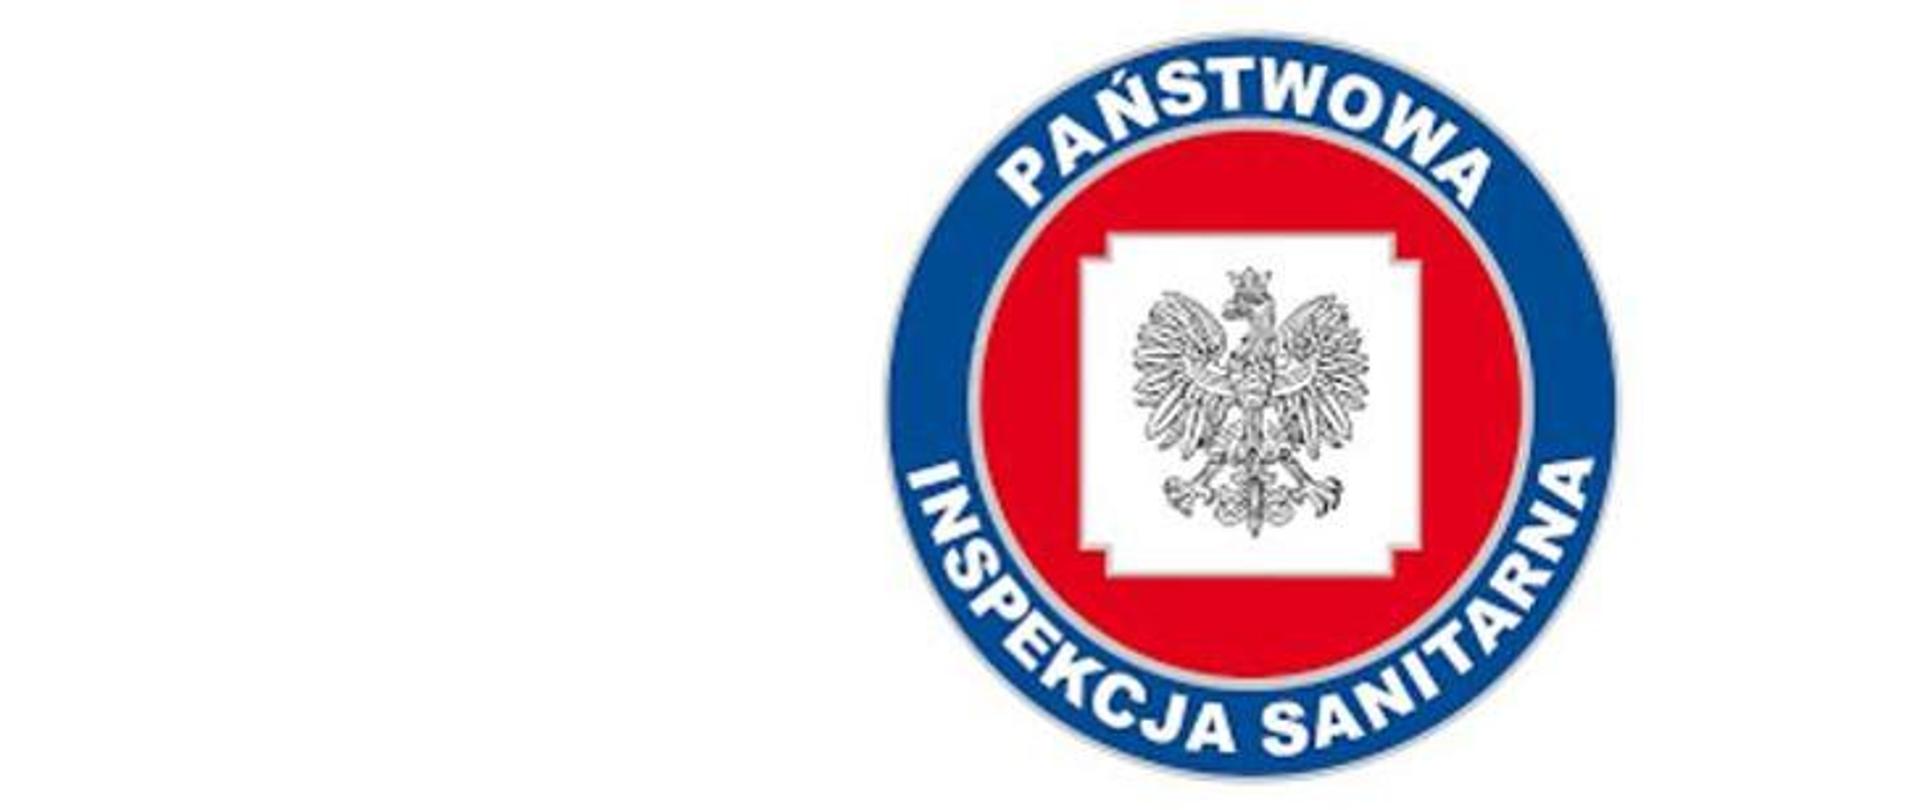 Ogłoszenie Powiatowej Stacji Sanitarno-epidemiologicznej w Łosicach